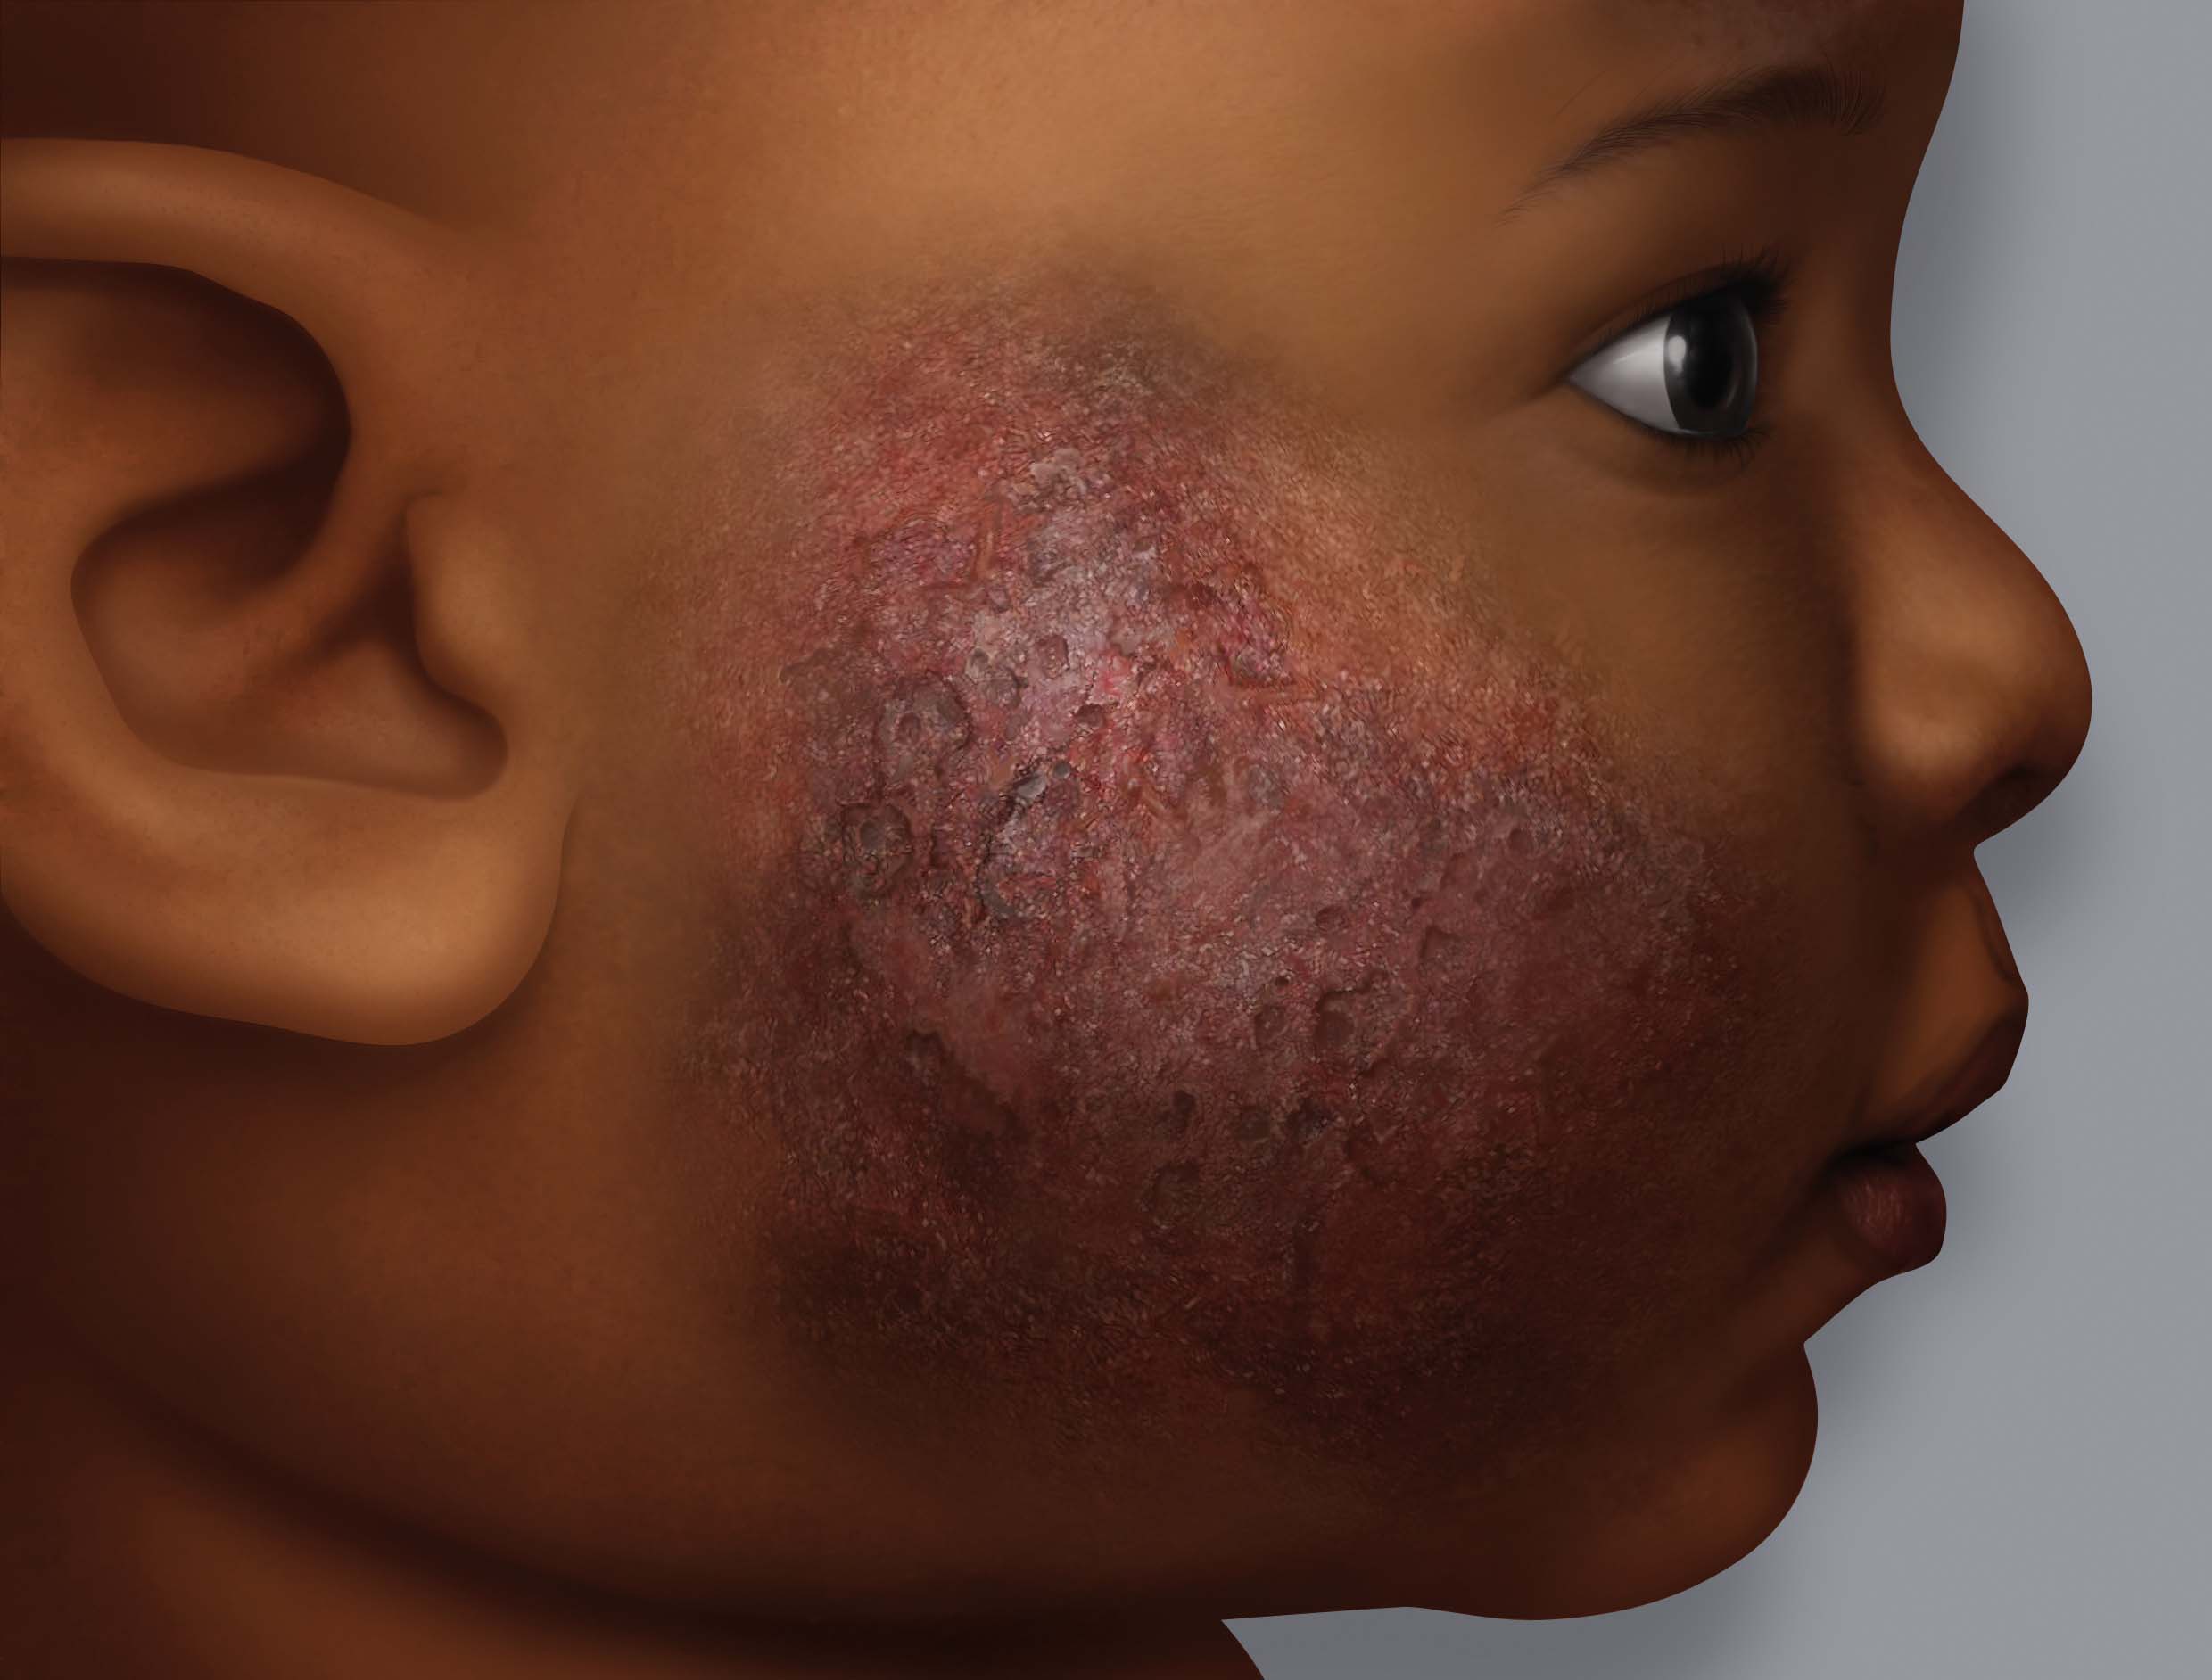 Symptome von Ekzemen auf dunkler Haut: Nässen (Bläschen - Krusten)